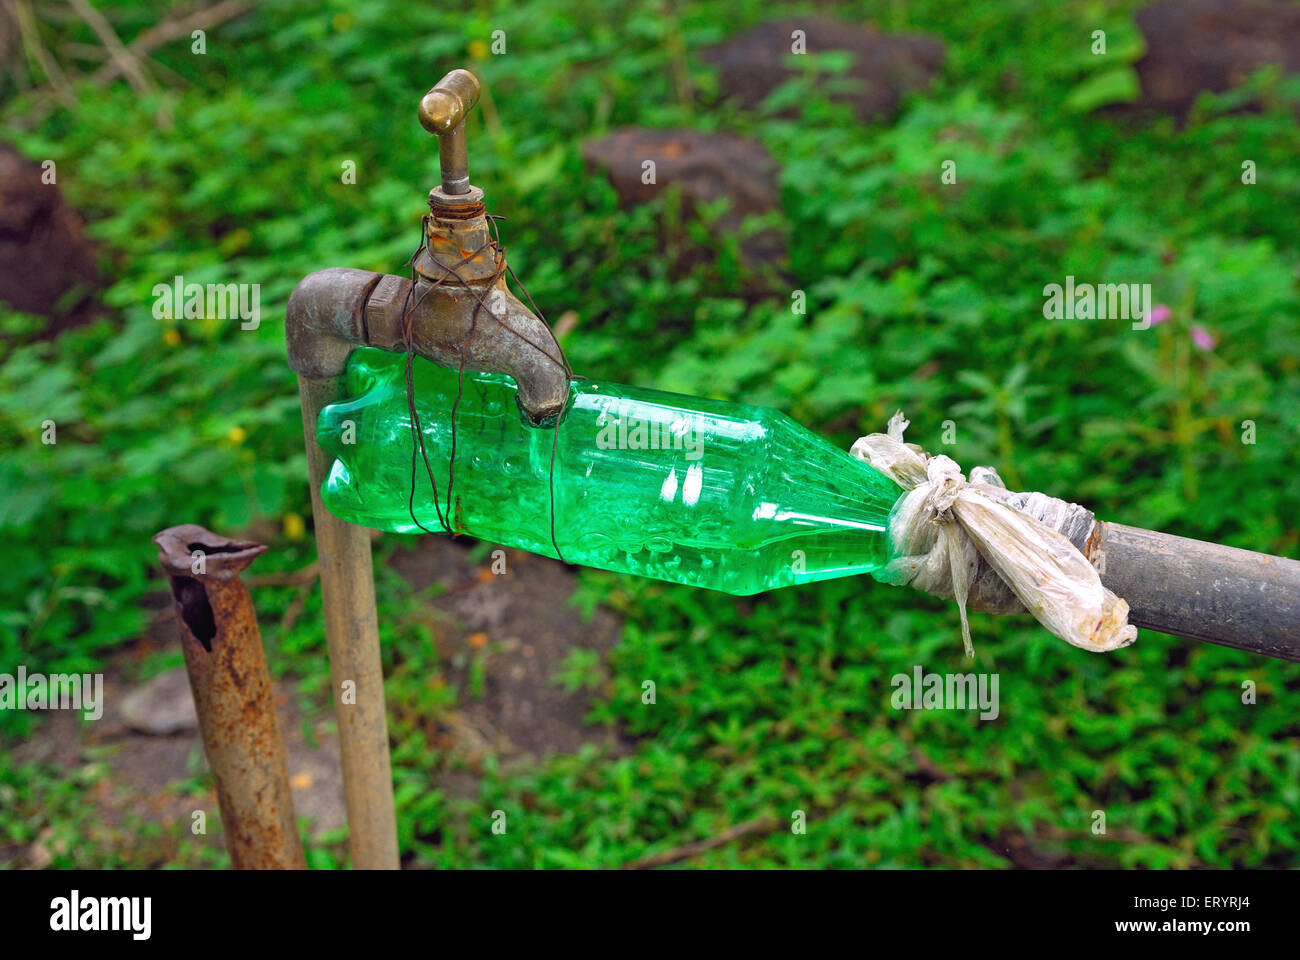 Kunststoff Wasserflasche zum Verbinden von Hahn und Rohr Bombay Mumbai Maharashtra Indien Asien Idee indische geniale Erfindung ungewöhnlich seltsam lustig Asiatisch Stockfoto